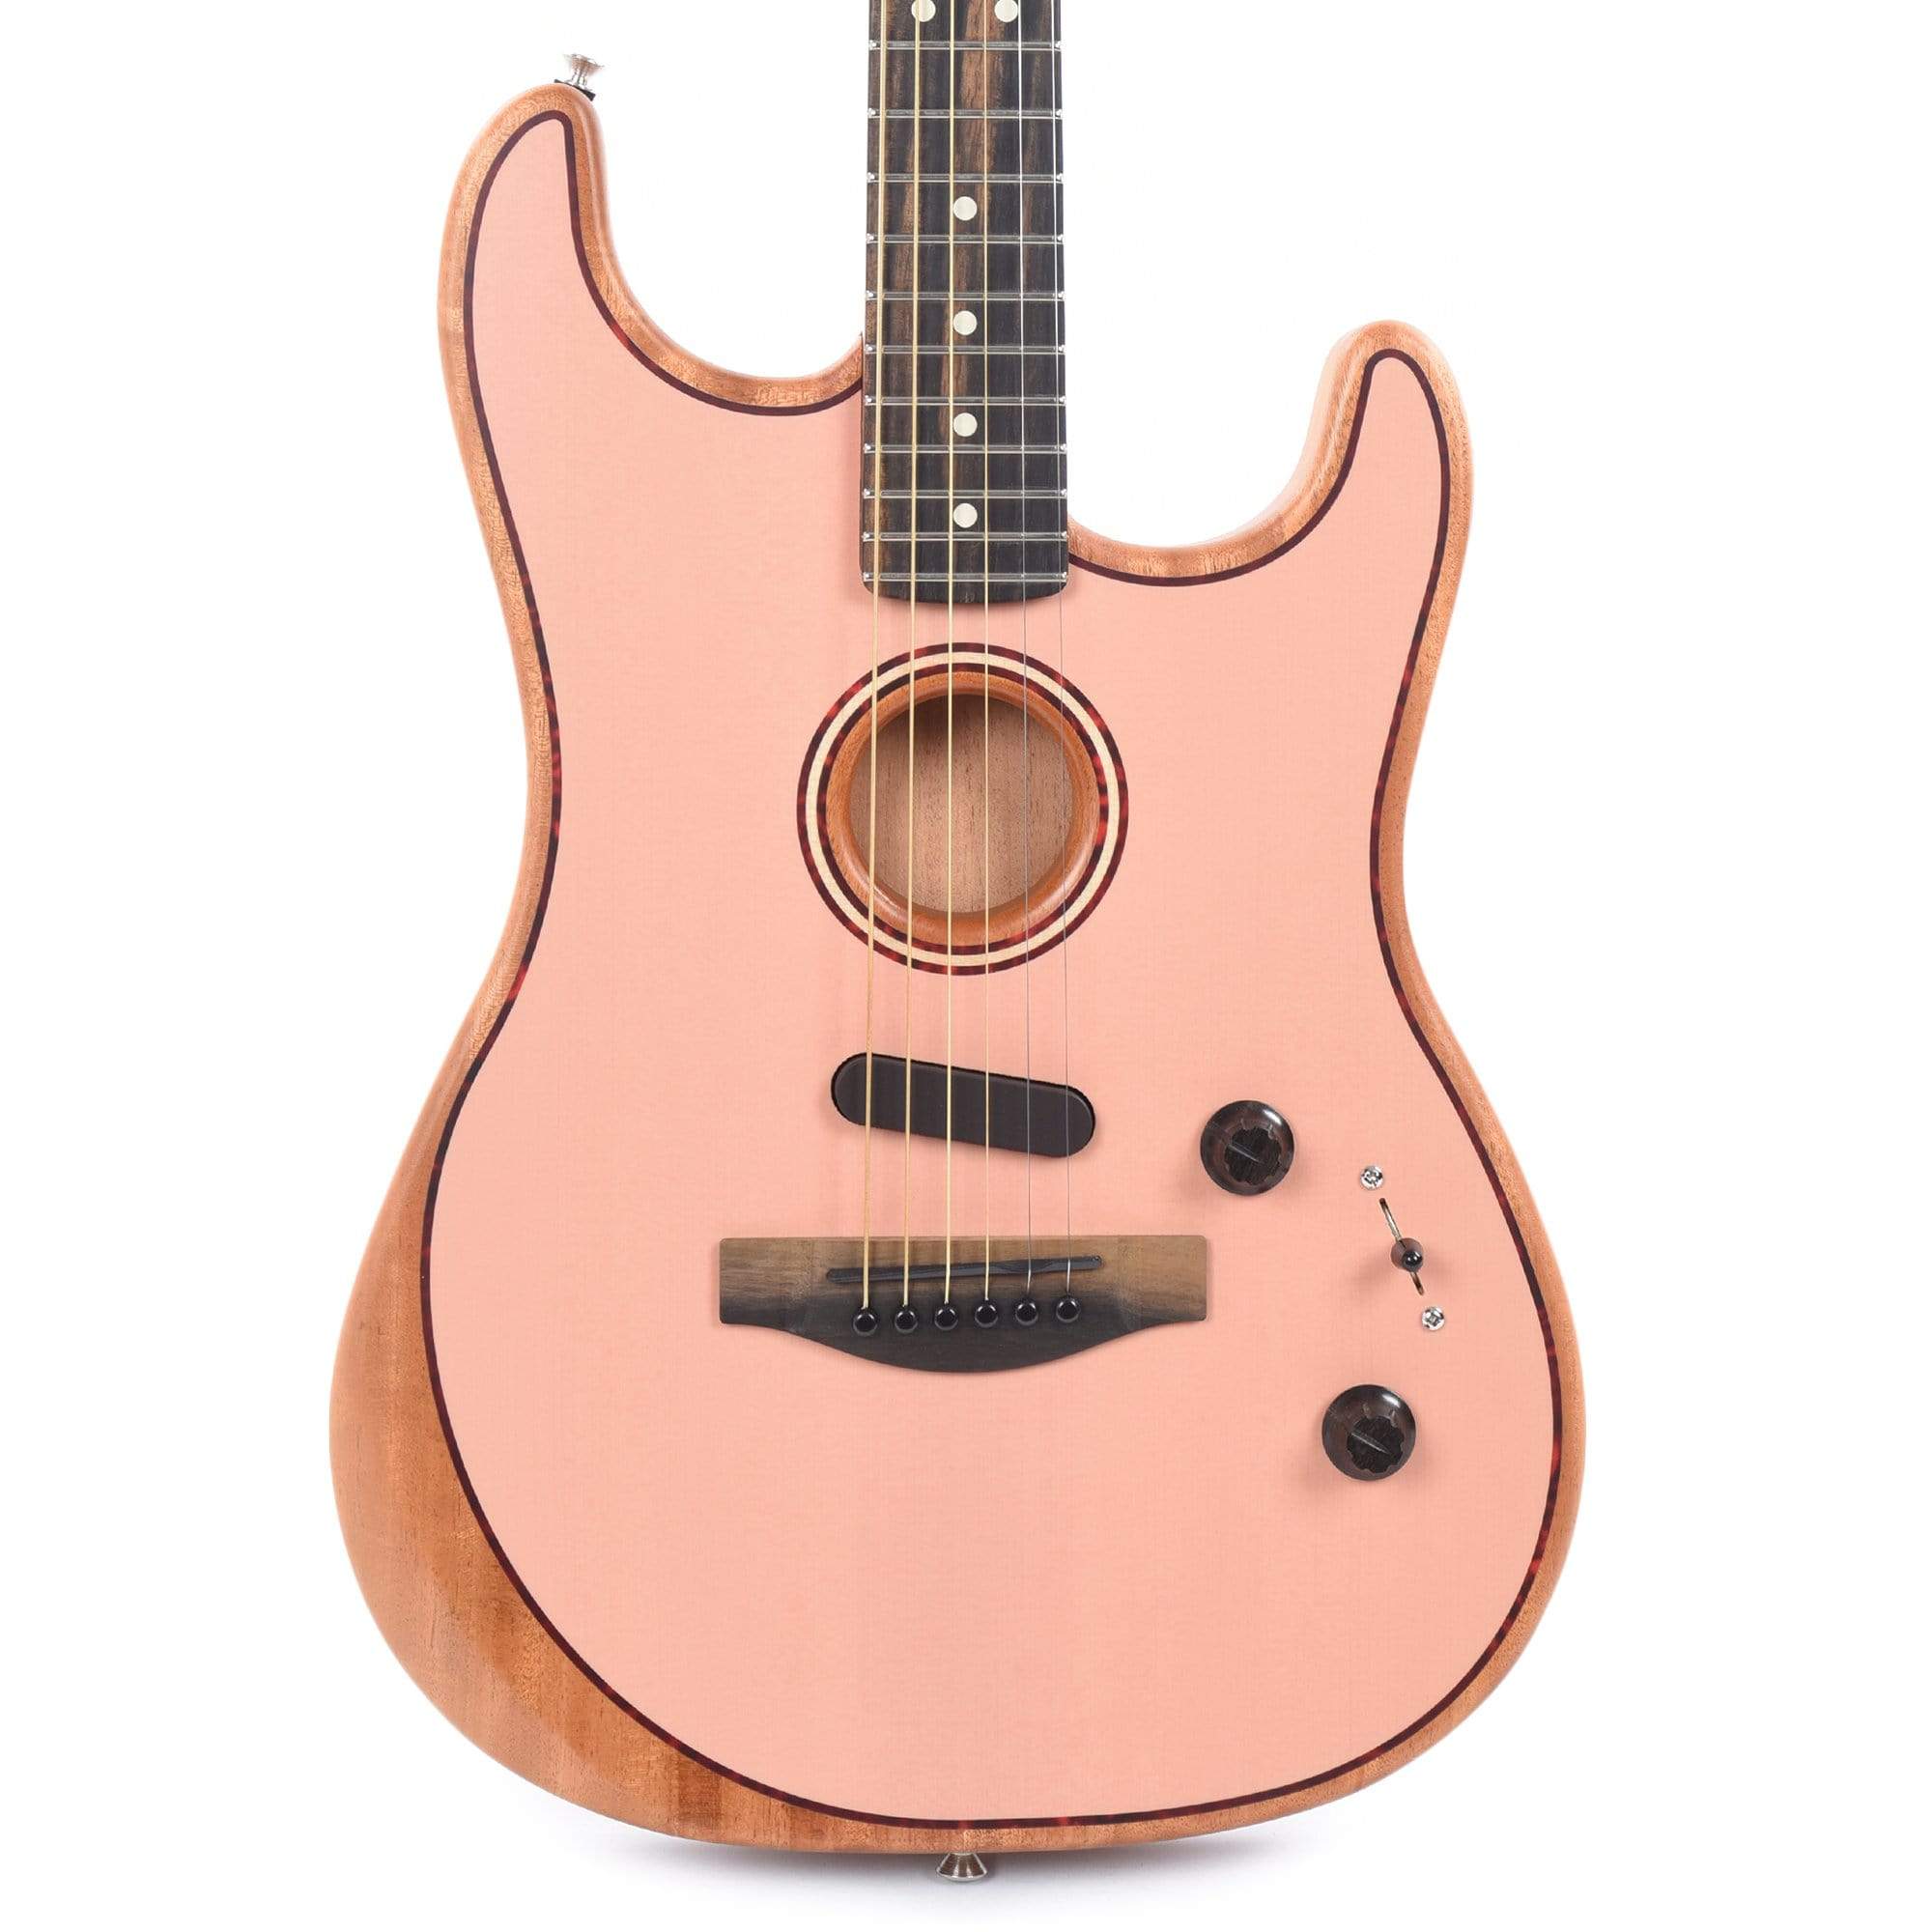 Micros Stratocaster - Cecca guitars